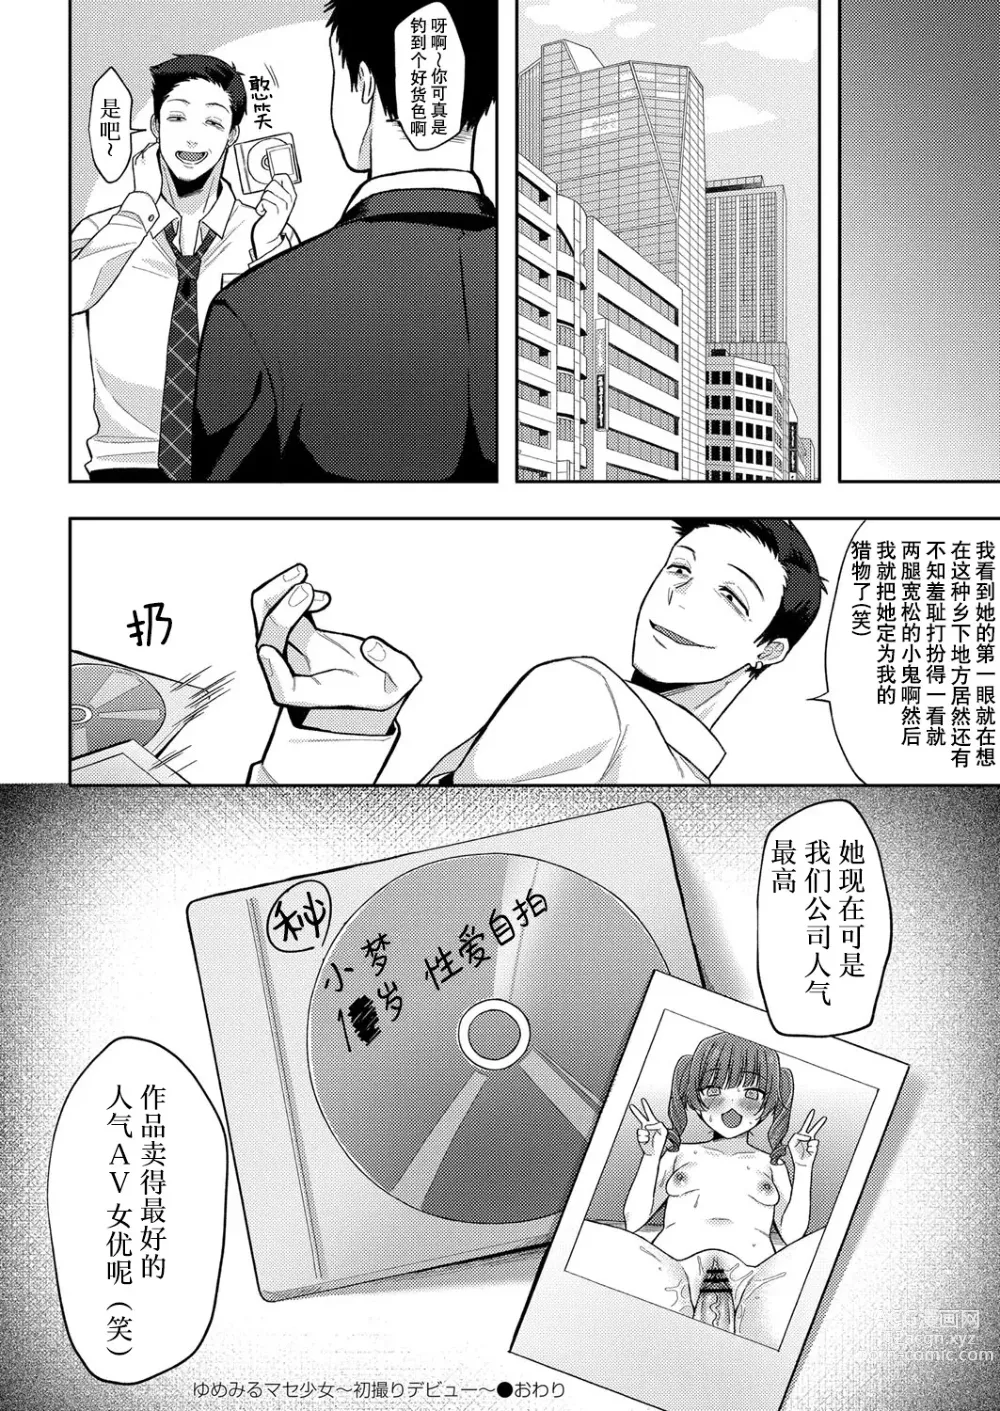 Page 30 of manga Yumemiru Masegaki ~Hatsudori Debut~